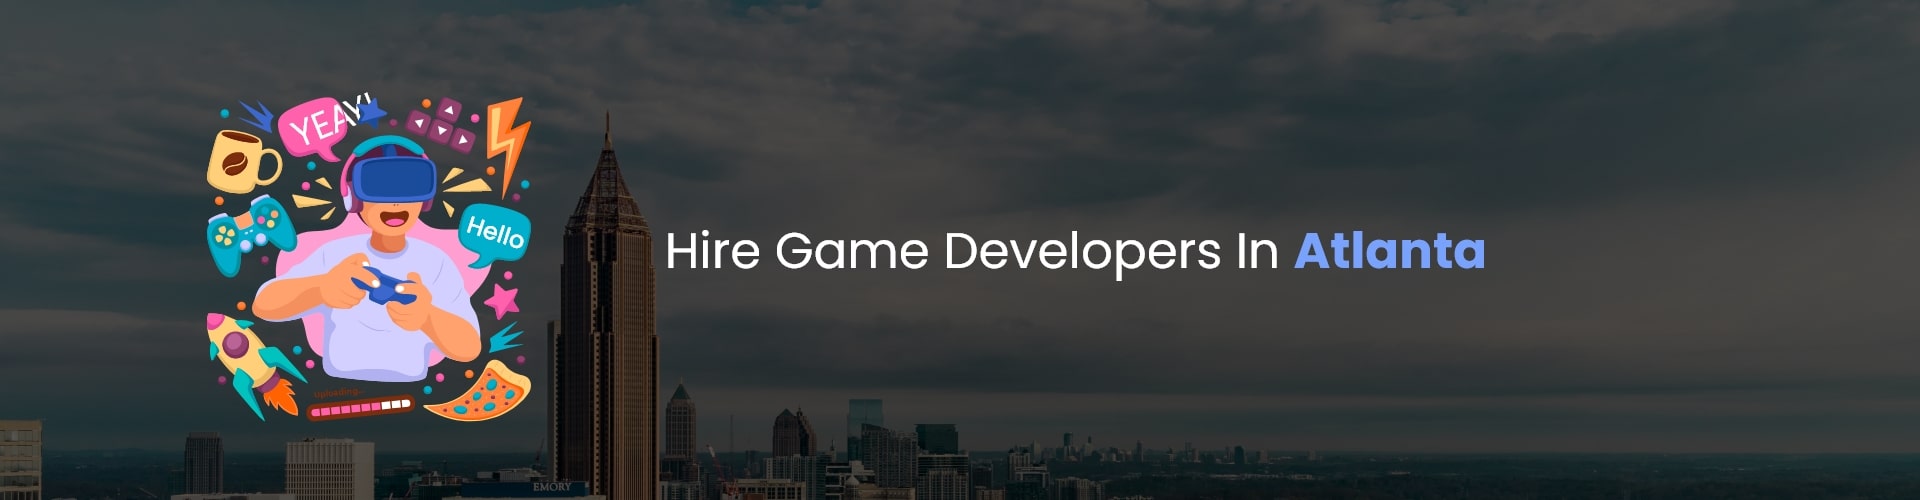 hire game developers in atlanta